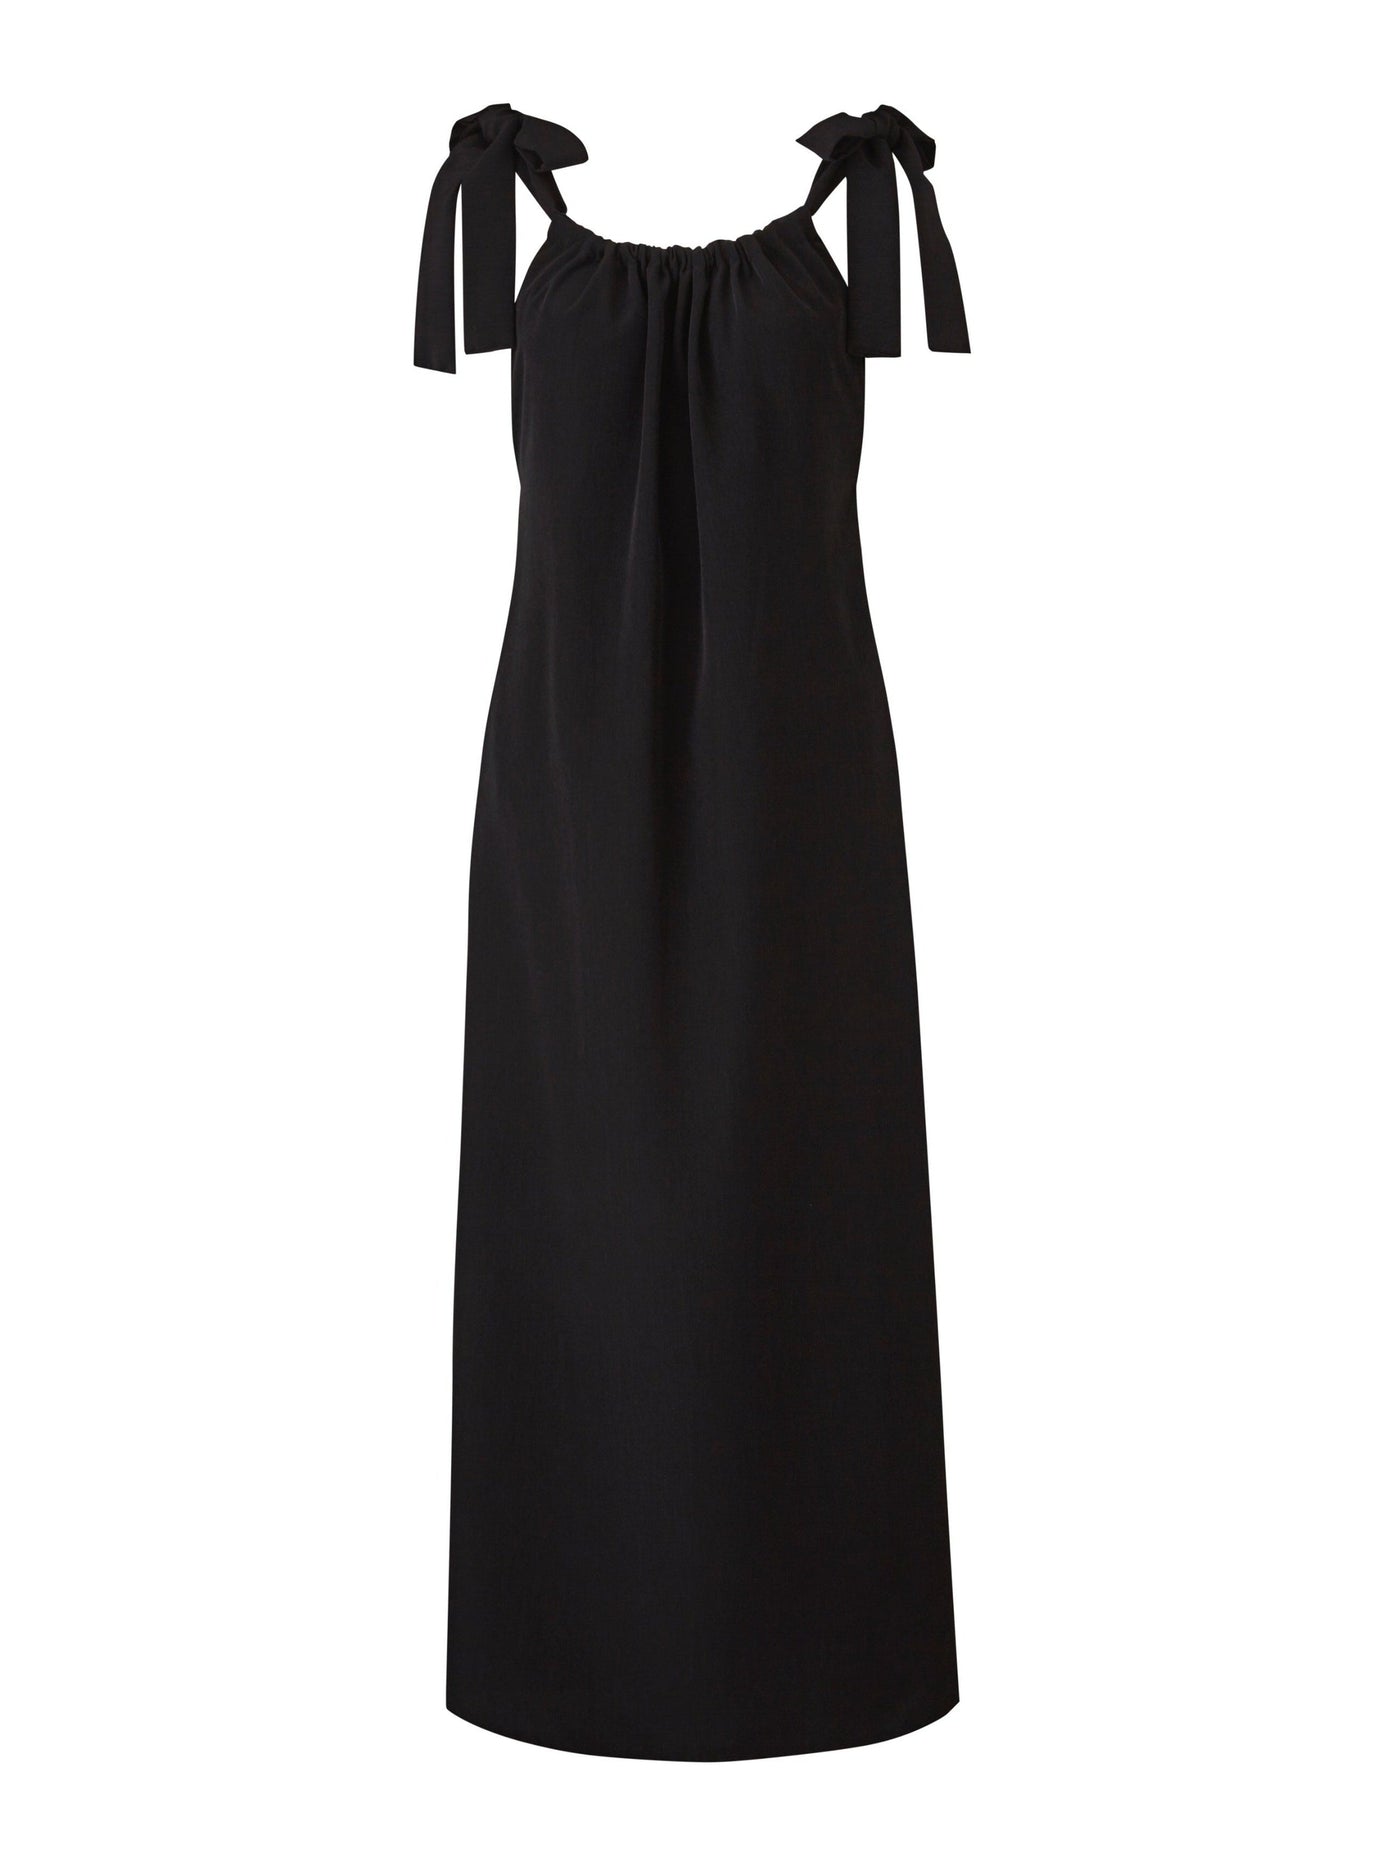 Rosa Strappy Dress in Black